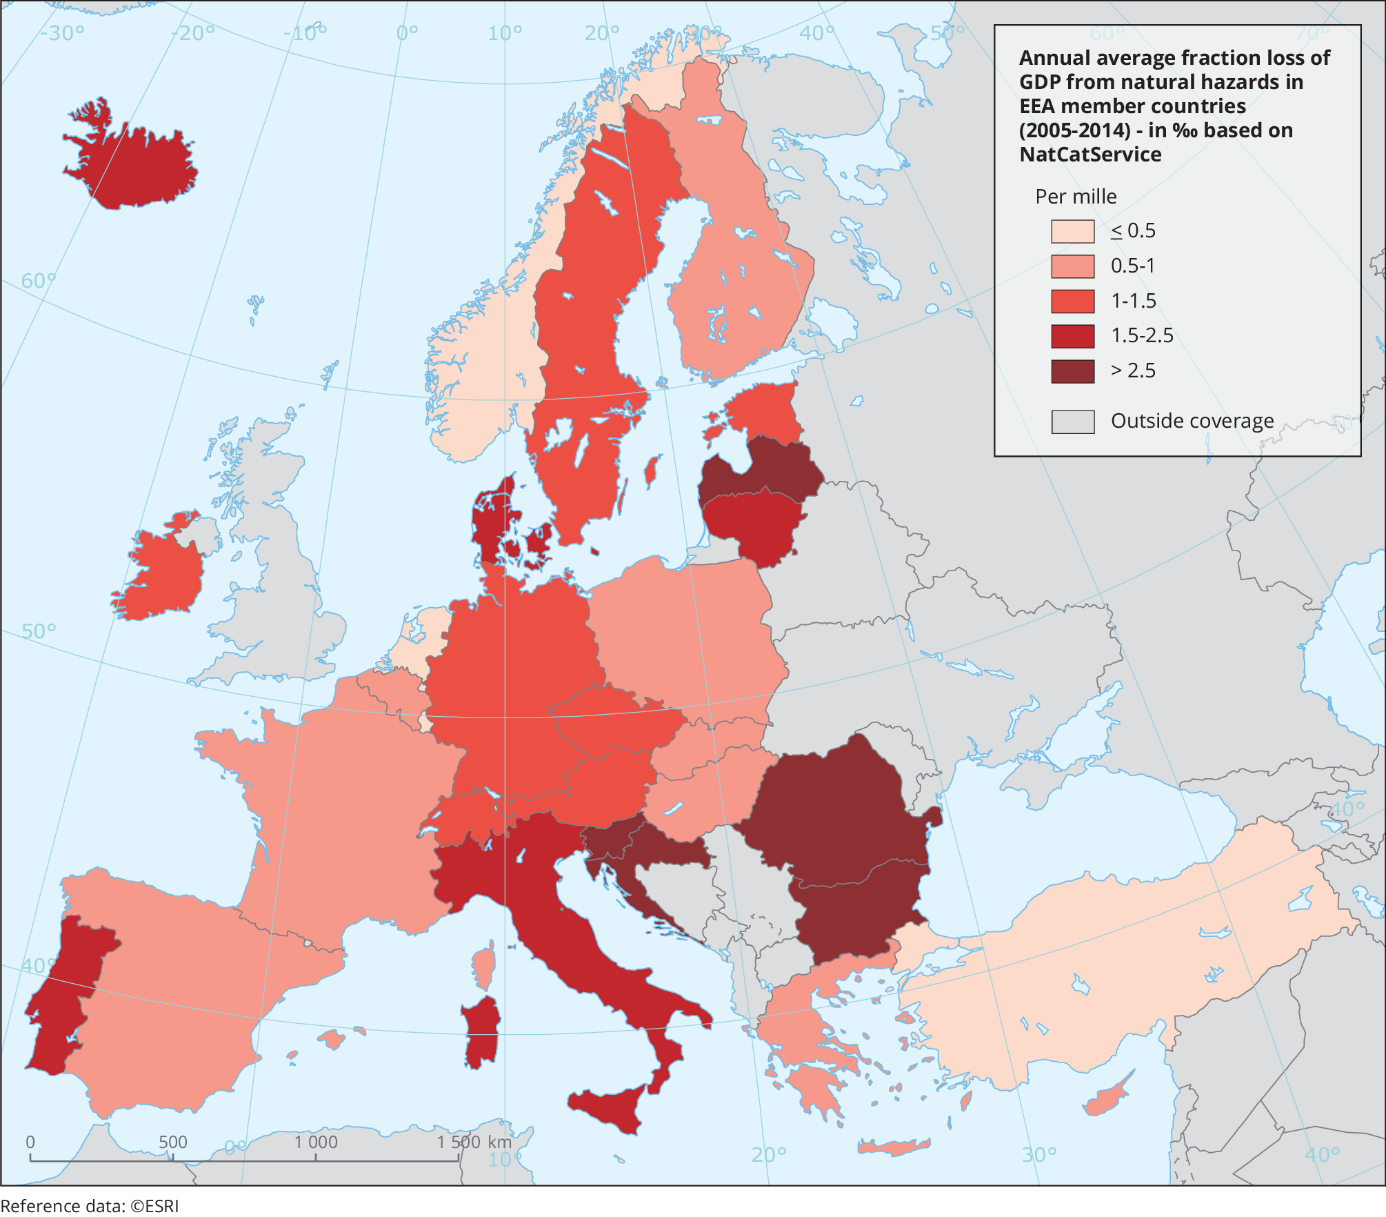 Karte die den jährlichen durchschnittlichen Anteil der Verluste durch Naturgefahren in den EEA Mitgliedsländern (2005 – 2014) in Promille zeigt